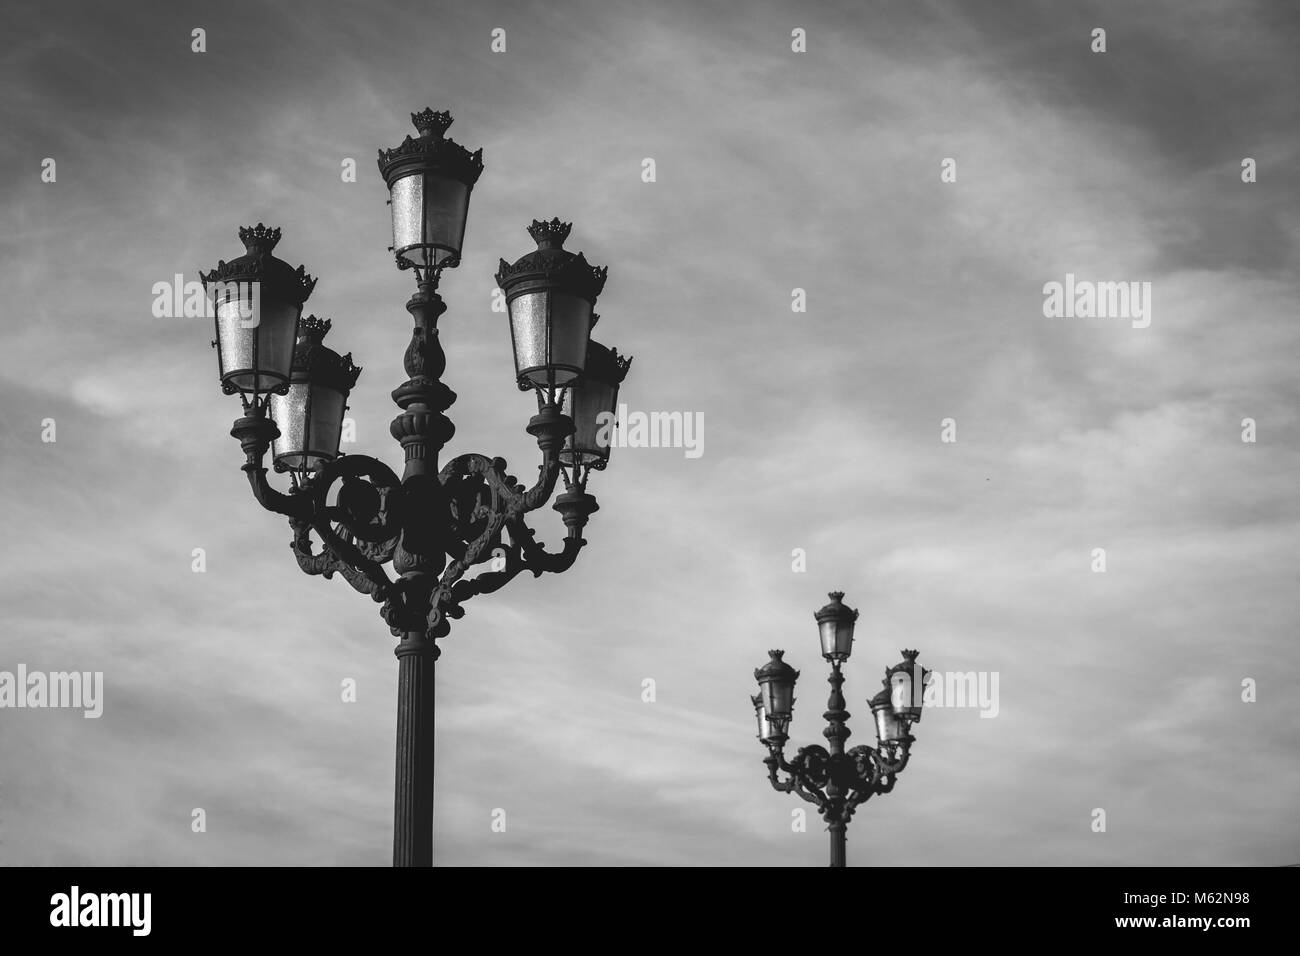 Popolari lampada ornati posti nel cielo nuvoloso sfondo nella città di Bilbao, Spagna del nord Foto Stock